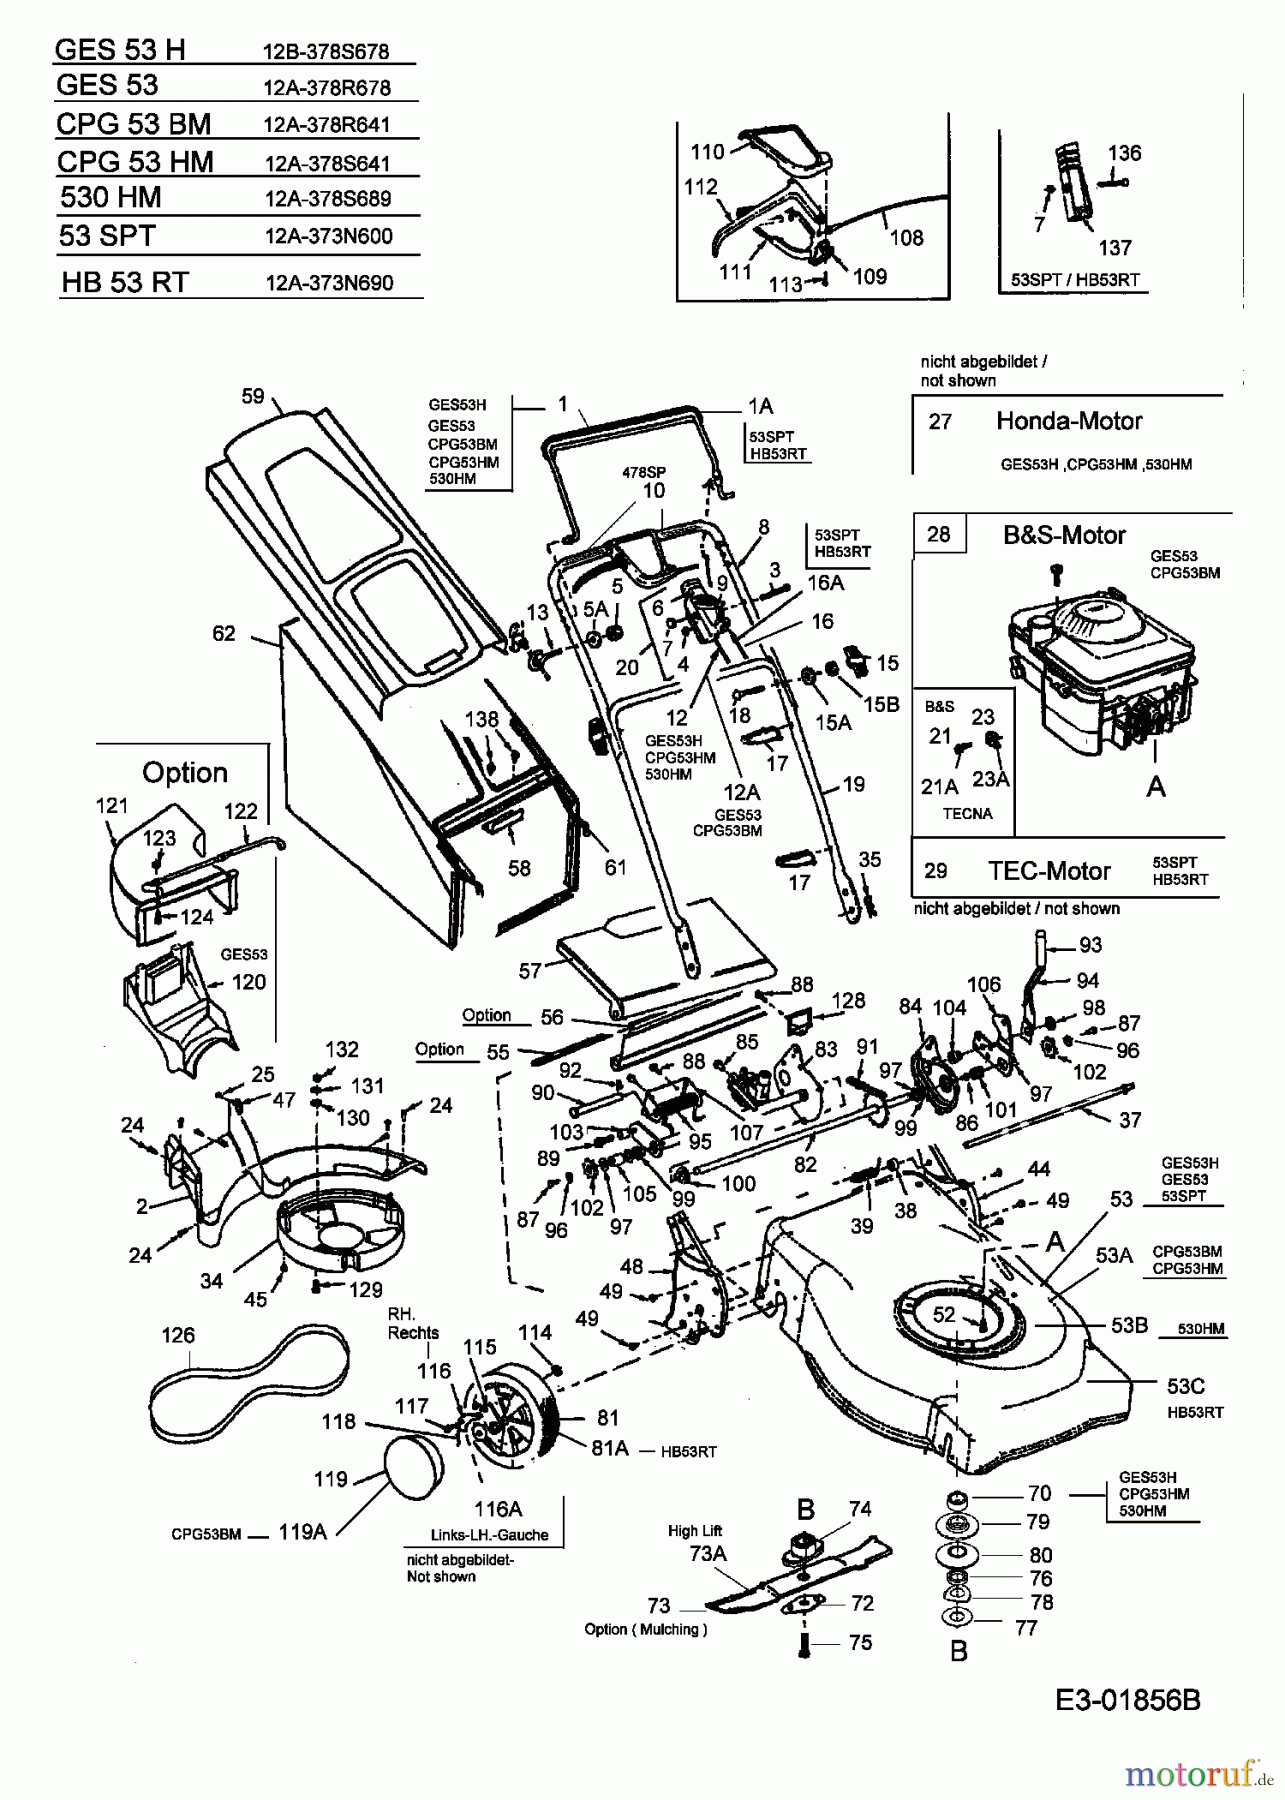  MTD Motormäher mit Antrieb GES 53 12A-378R678  (2004) Grundgerät